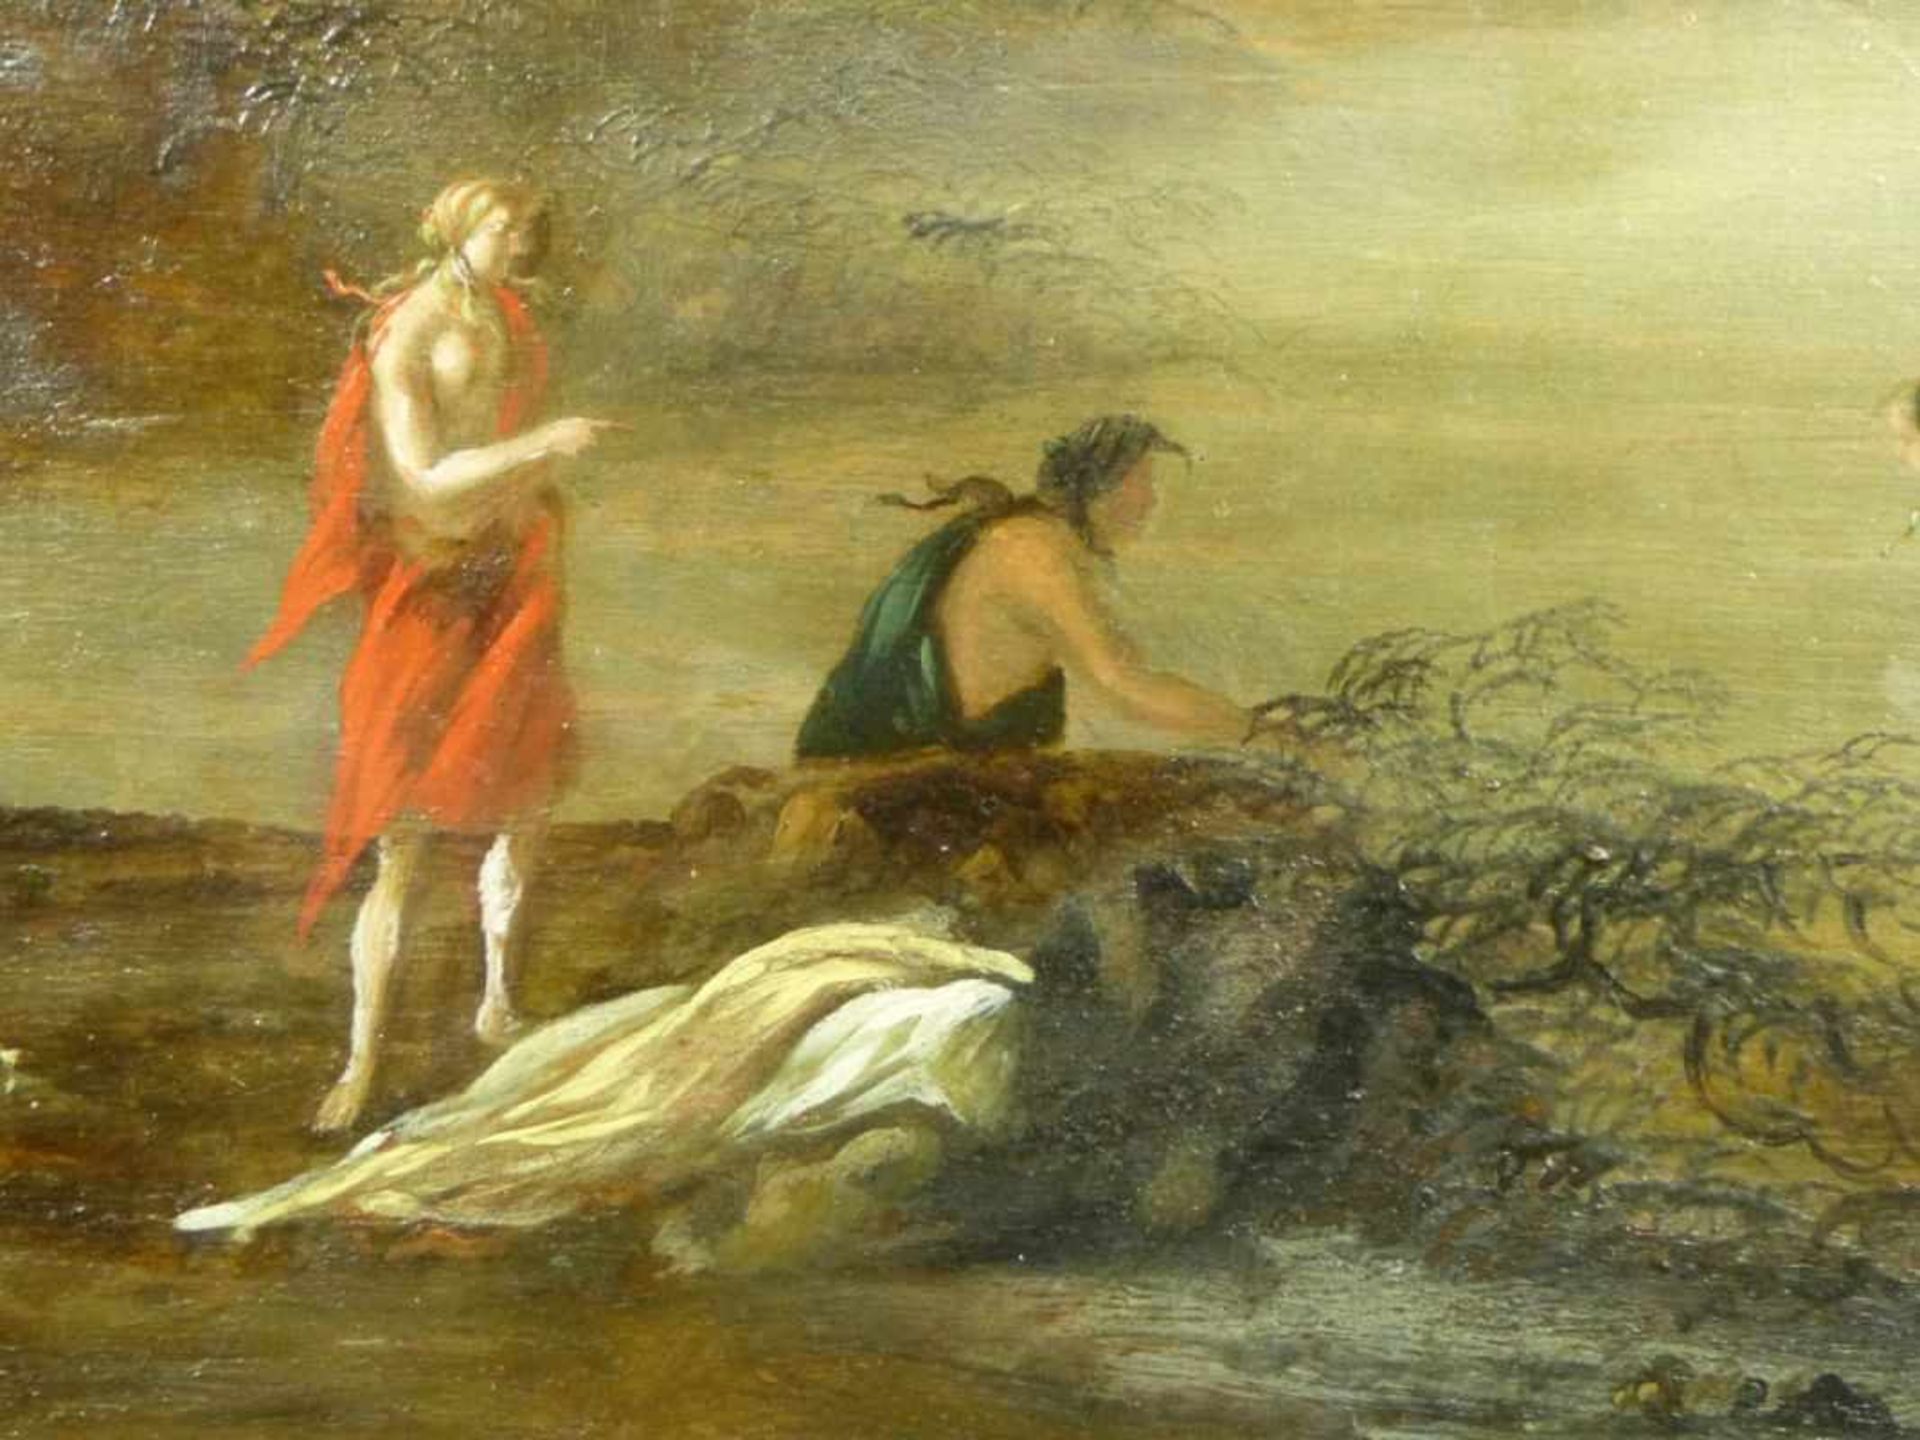 Mythologische SzeneUnbekannter Künstler d. 18. Jh.Skizzenhafte Darstellung zweier Figuren am Ufer, - Bild 4 aus 4